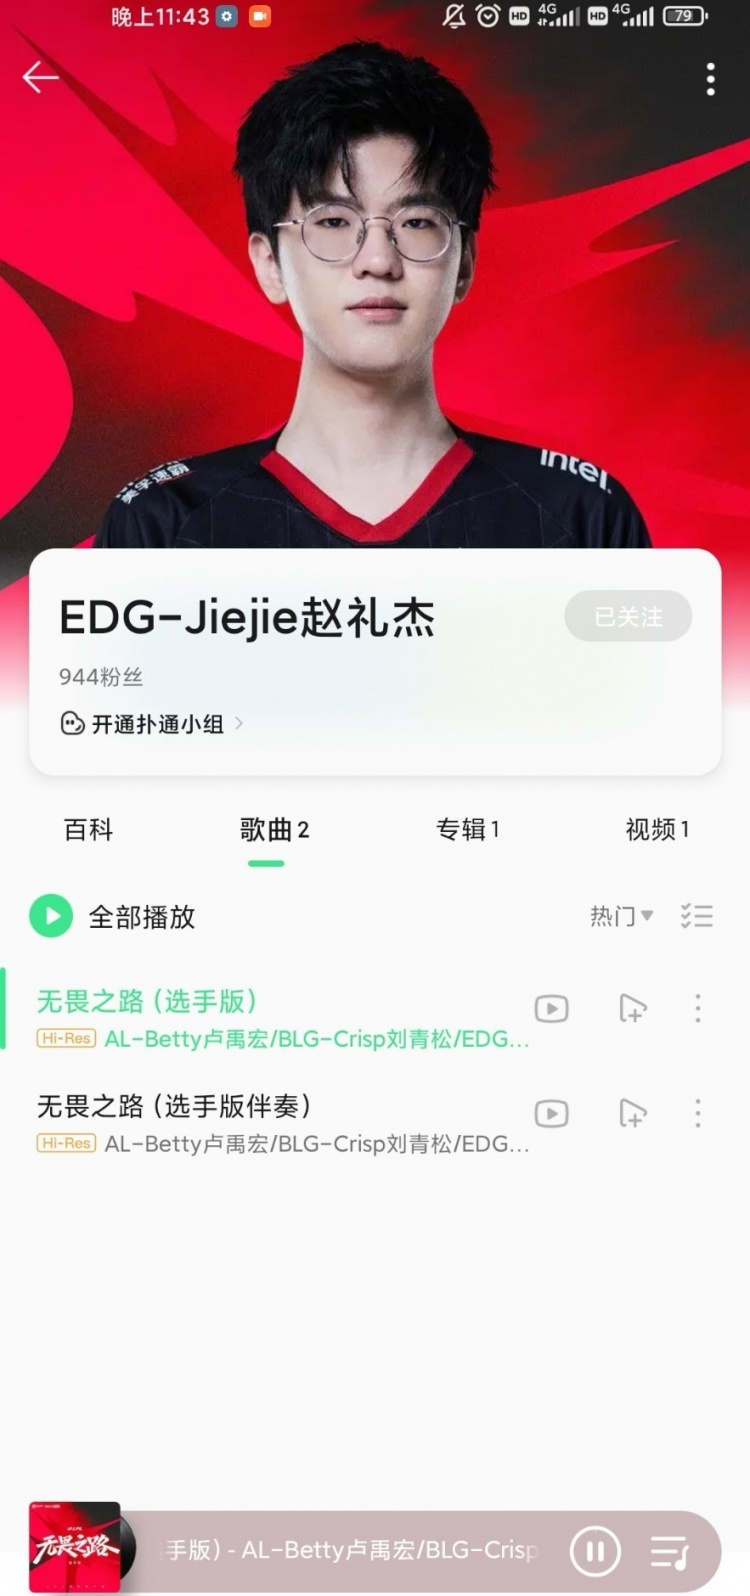 赵礼杰老师已经进军歌坛了！QQ音乐认证歌手EDG.jiejie